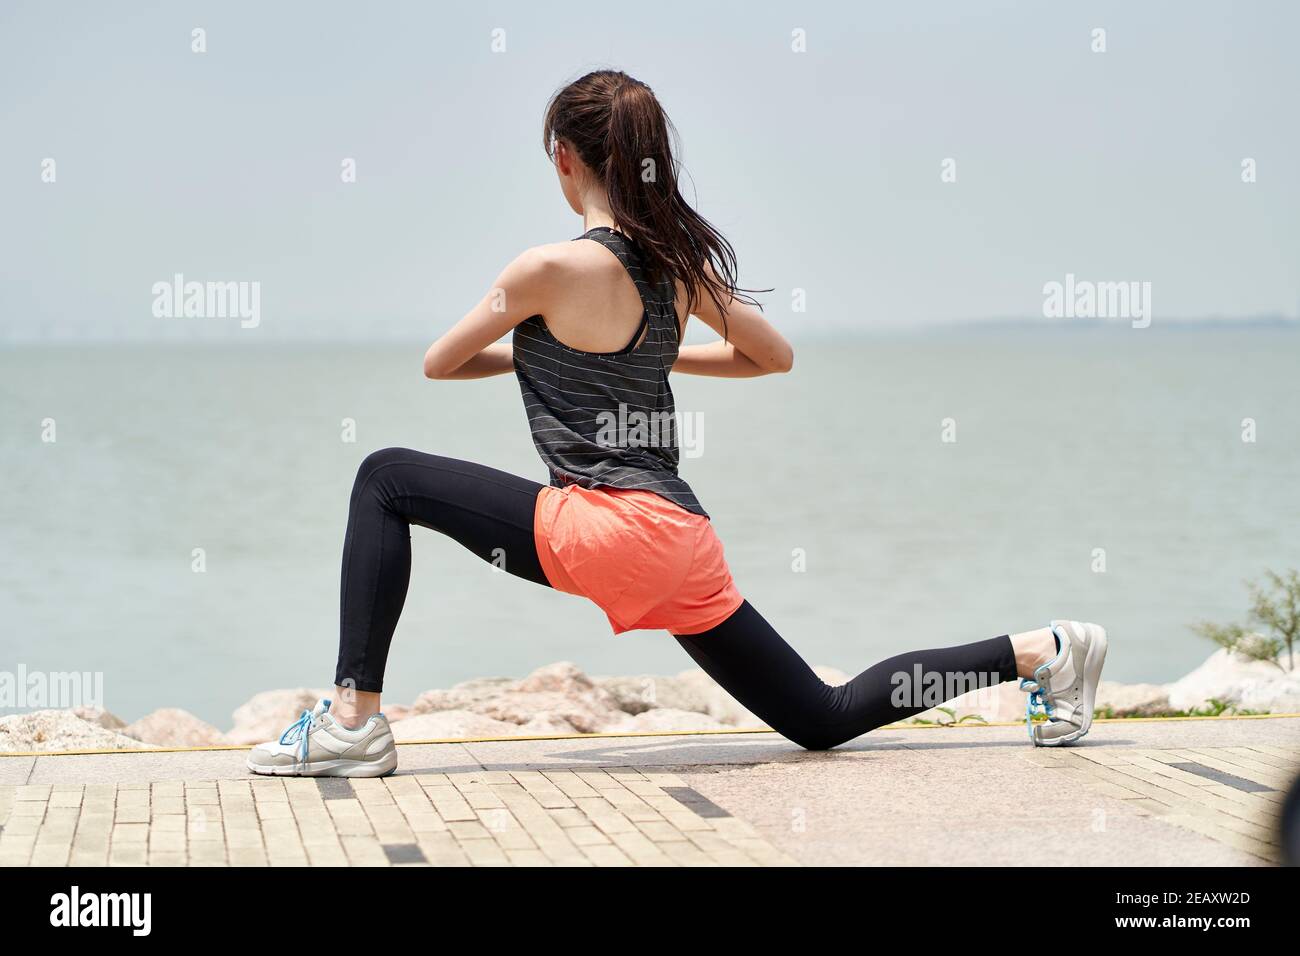 https://c8.alamy.com/compes/2eaxw2d/joven-mujer-asiatica-en-la-ropa-deportiva-calentandose-antes-de-hacer-ejercicio-al-aire-libre-en-el-parque-junto-al-mar-2eaxw2d.jpg